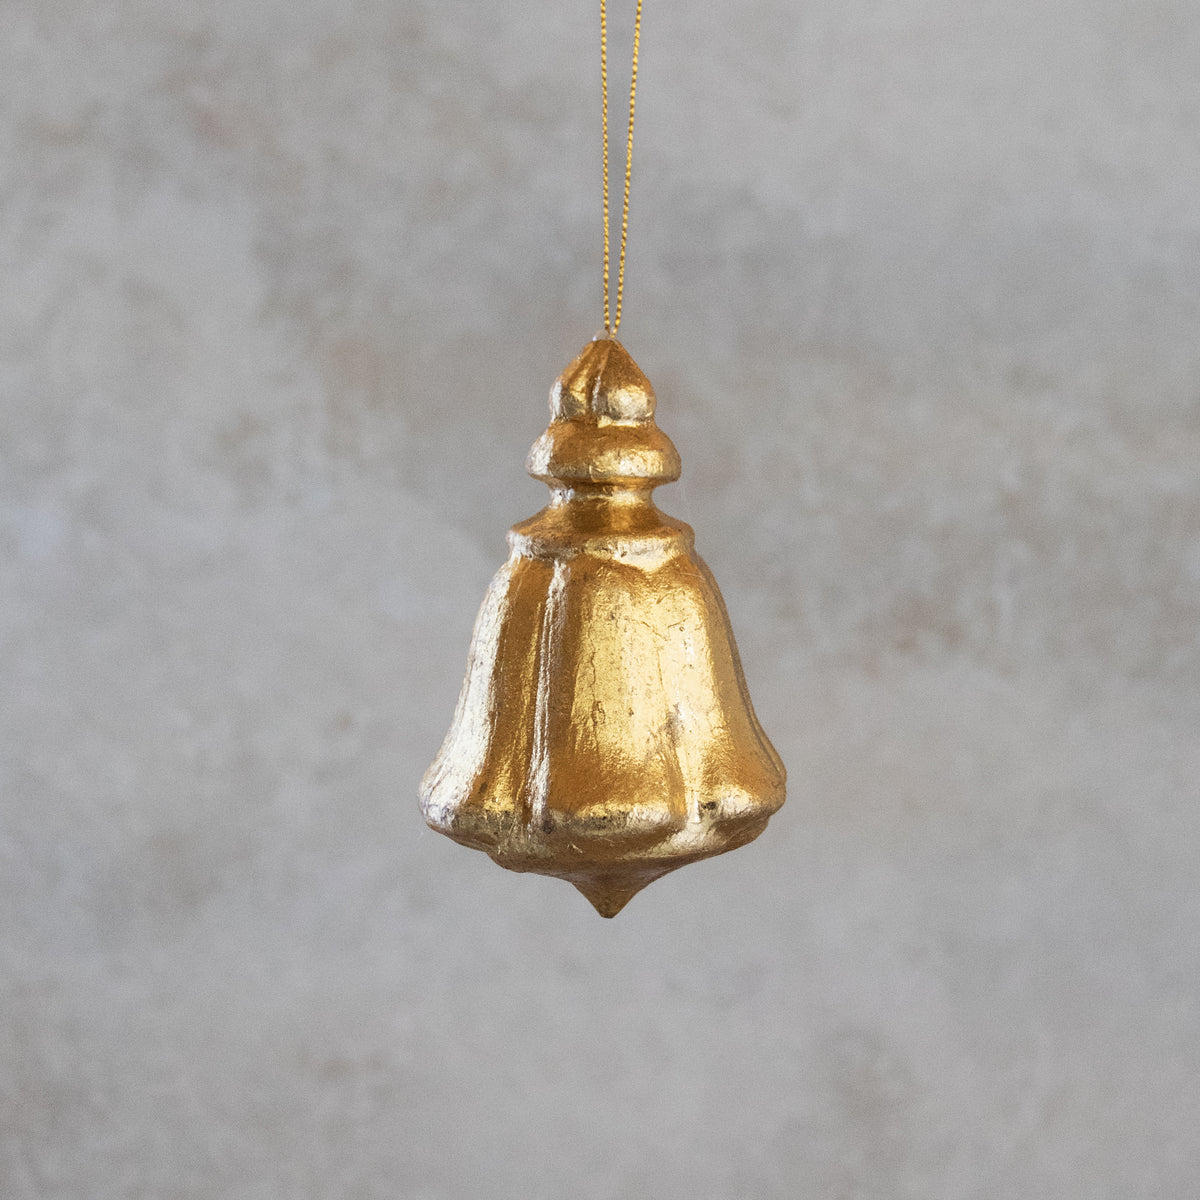 Goldfoil Ornament - Regal Bell